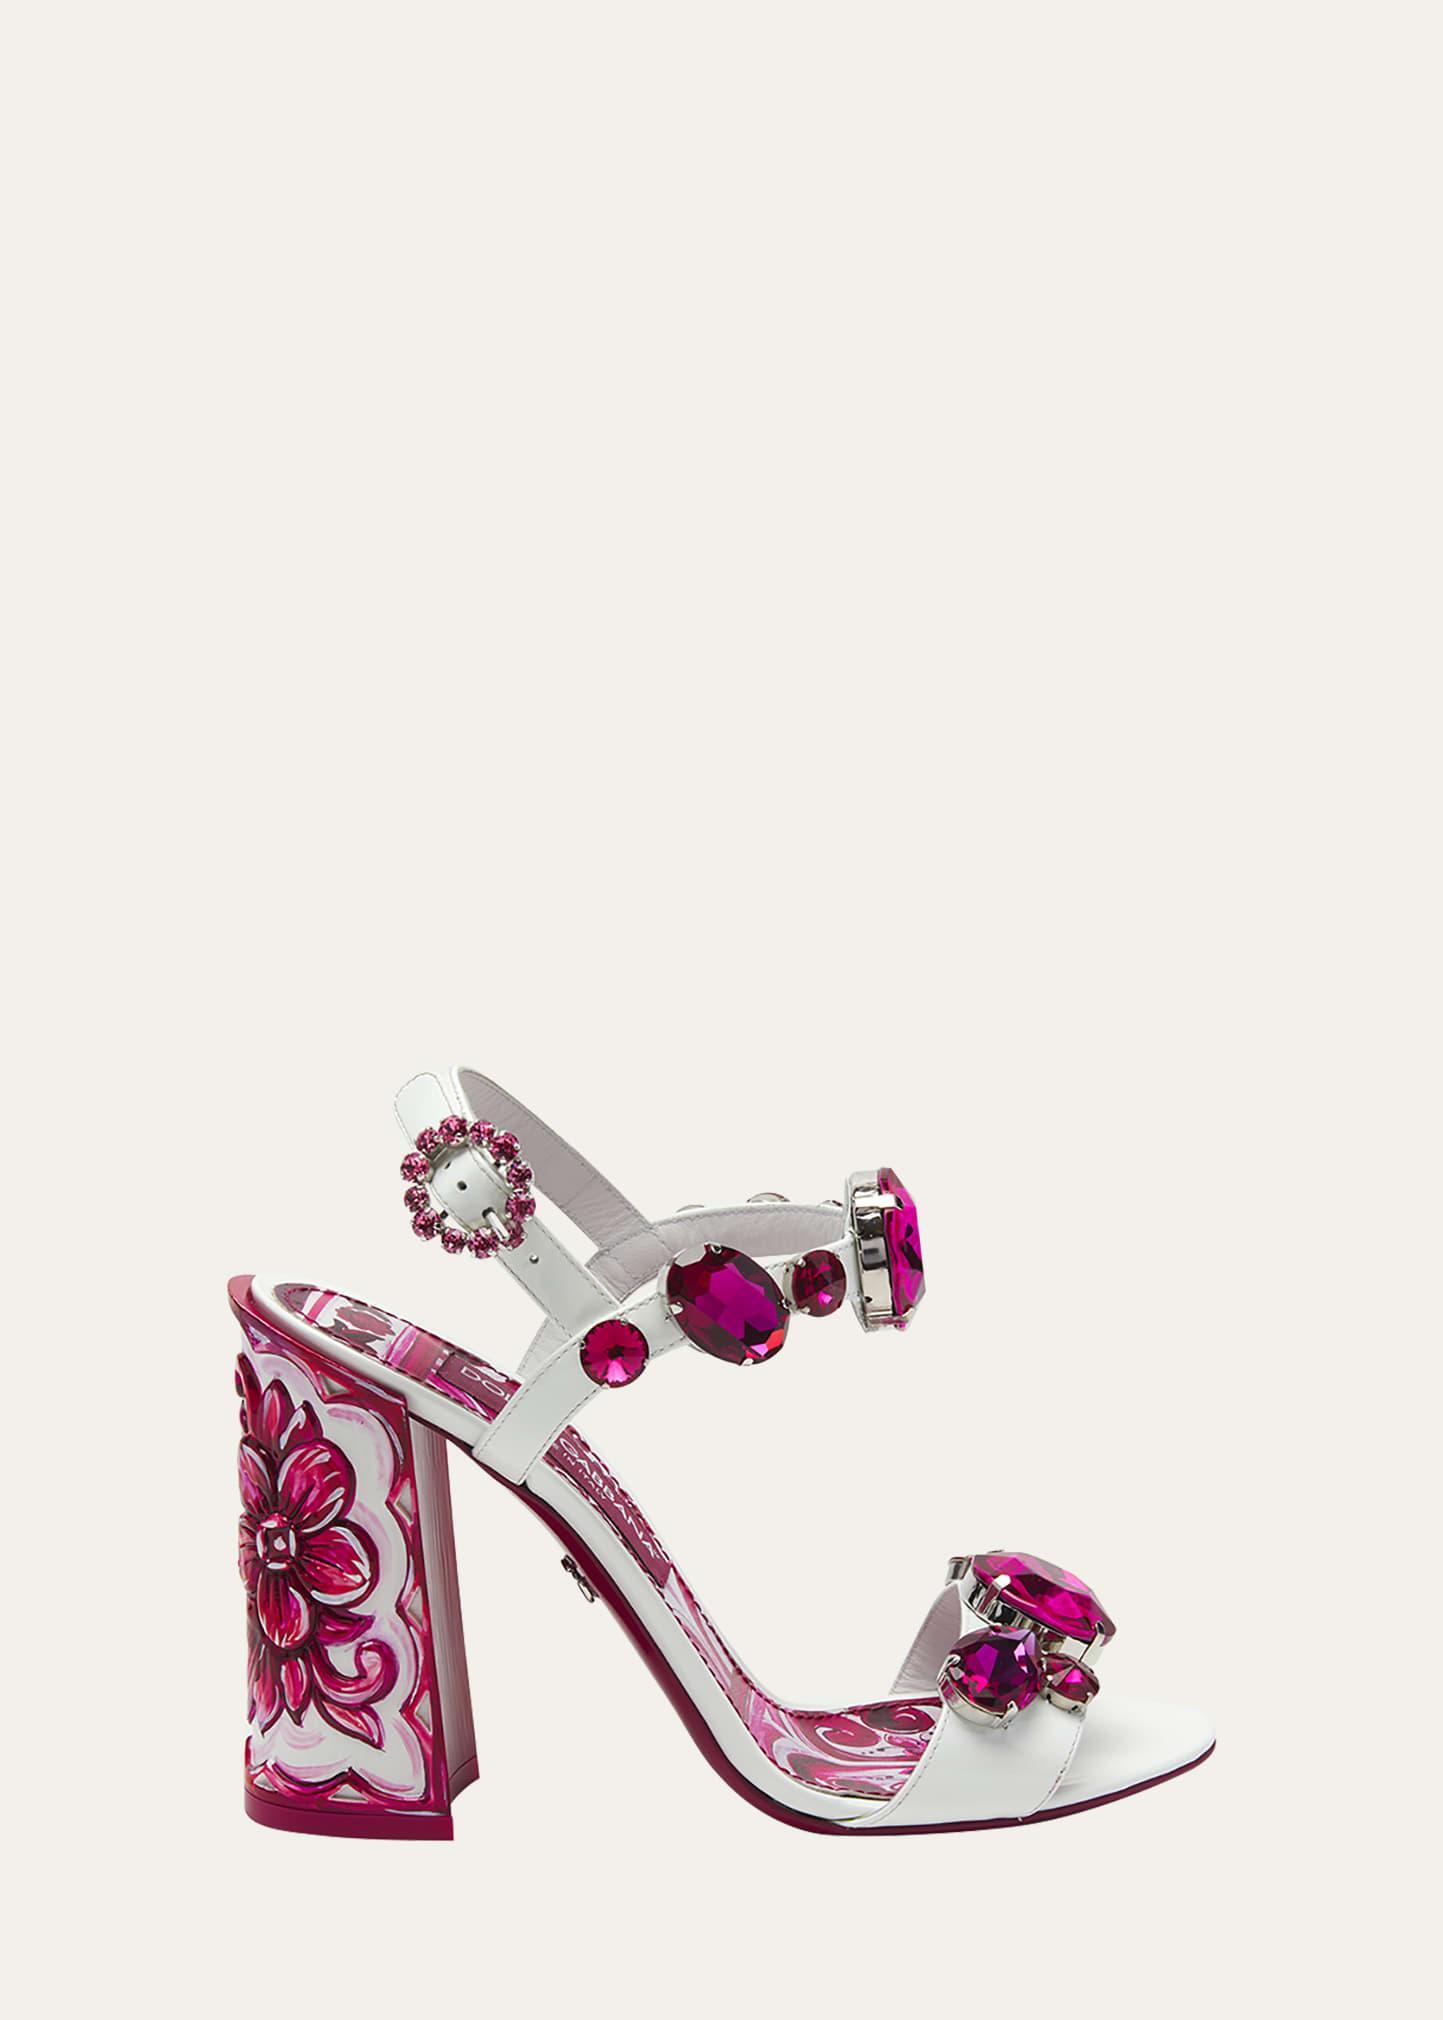 Dolce & Gabbana Keira Crystal Embellished Block Heel Platform Sandal Product Image